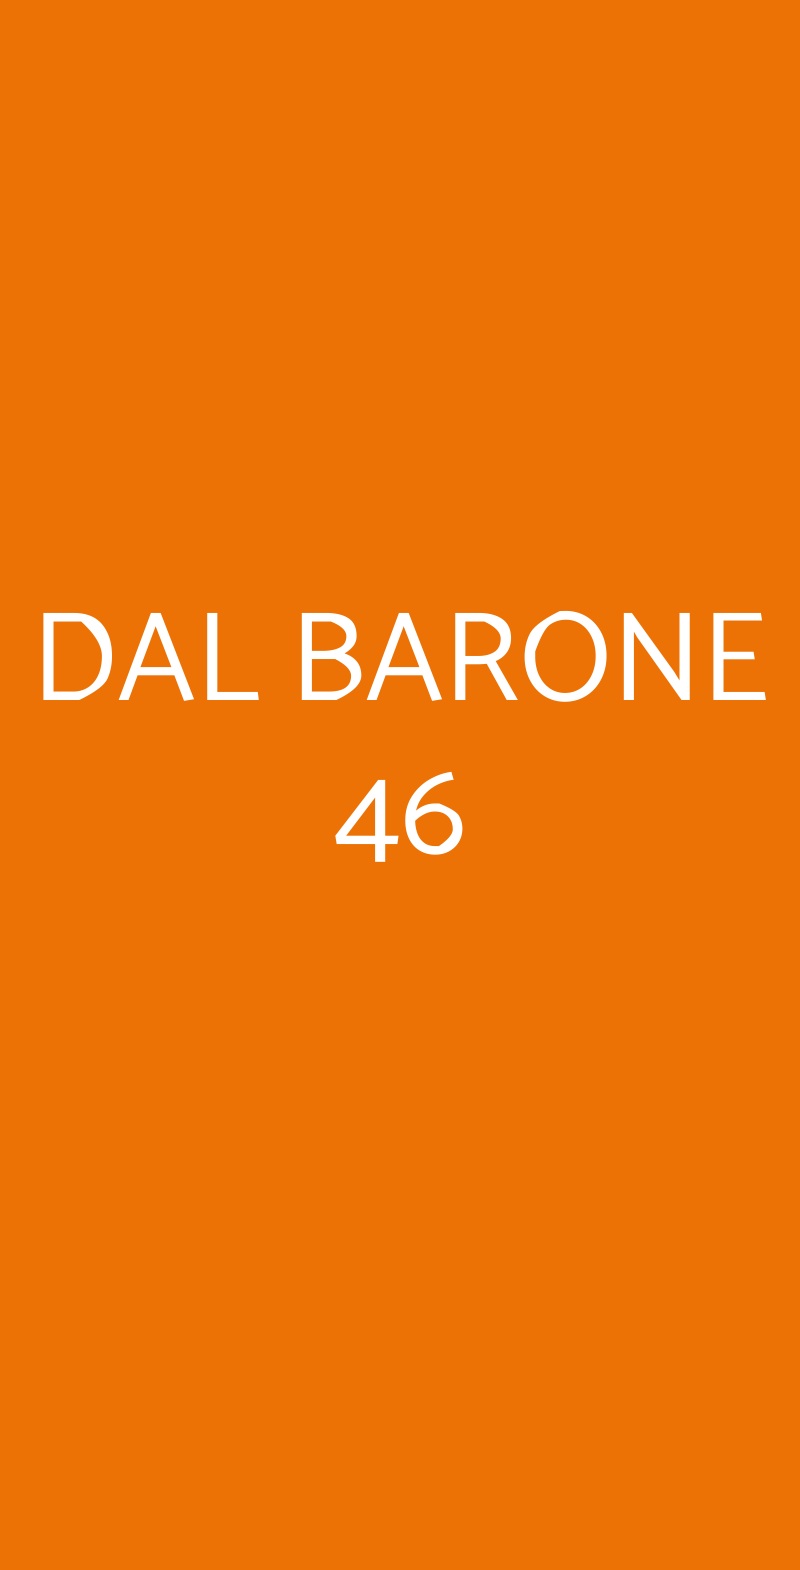 DAL BARONE 46 Bologna menù 1 pagina